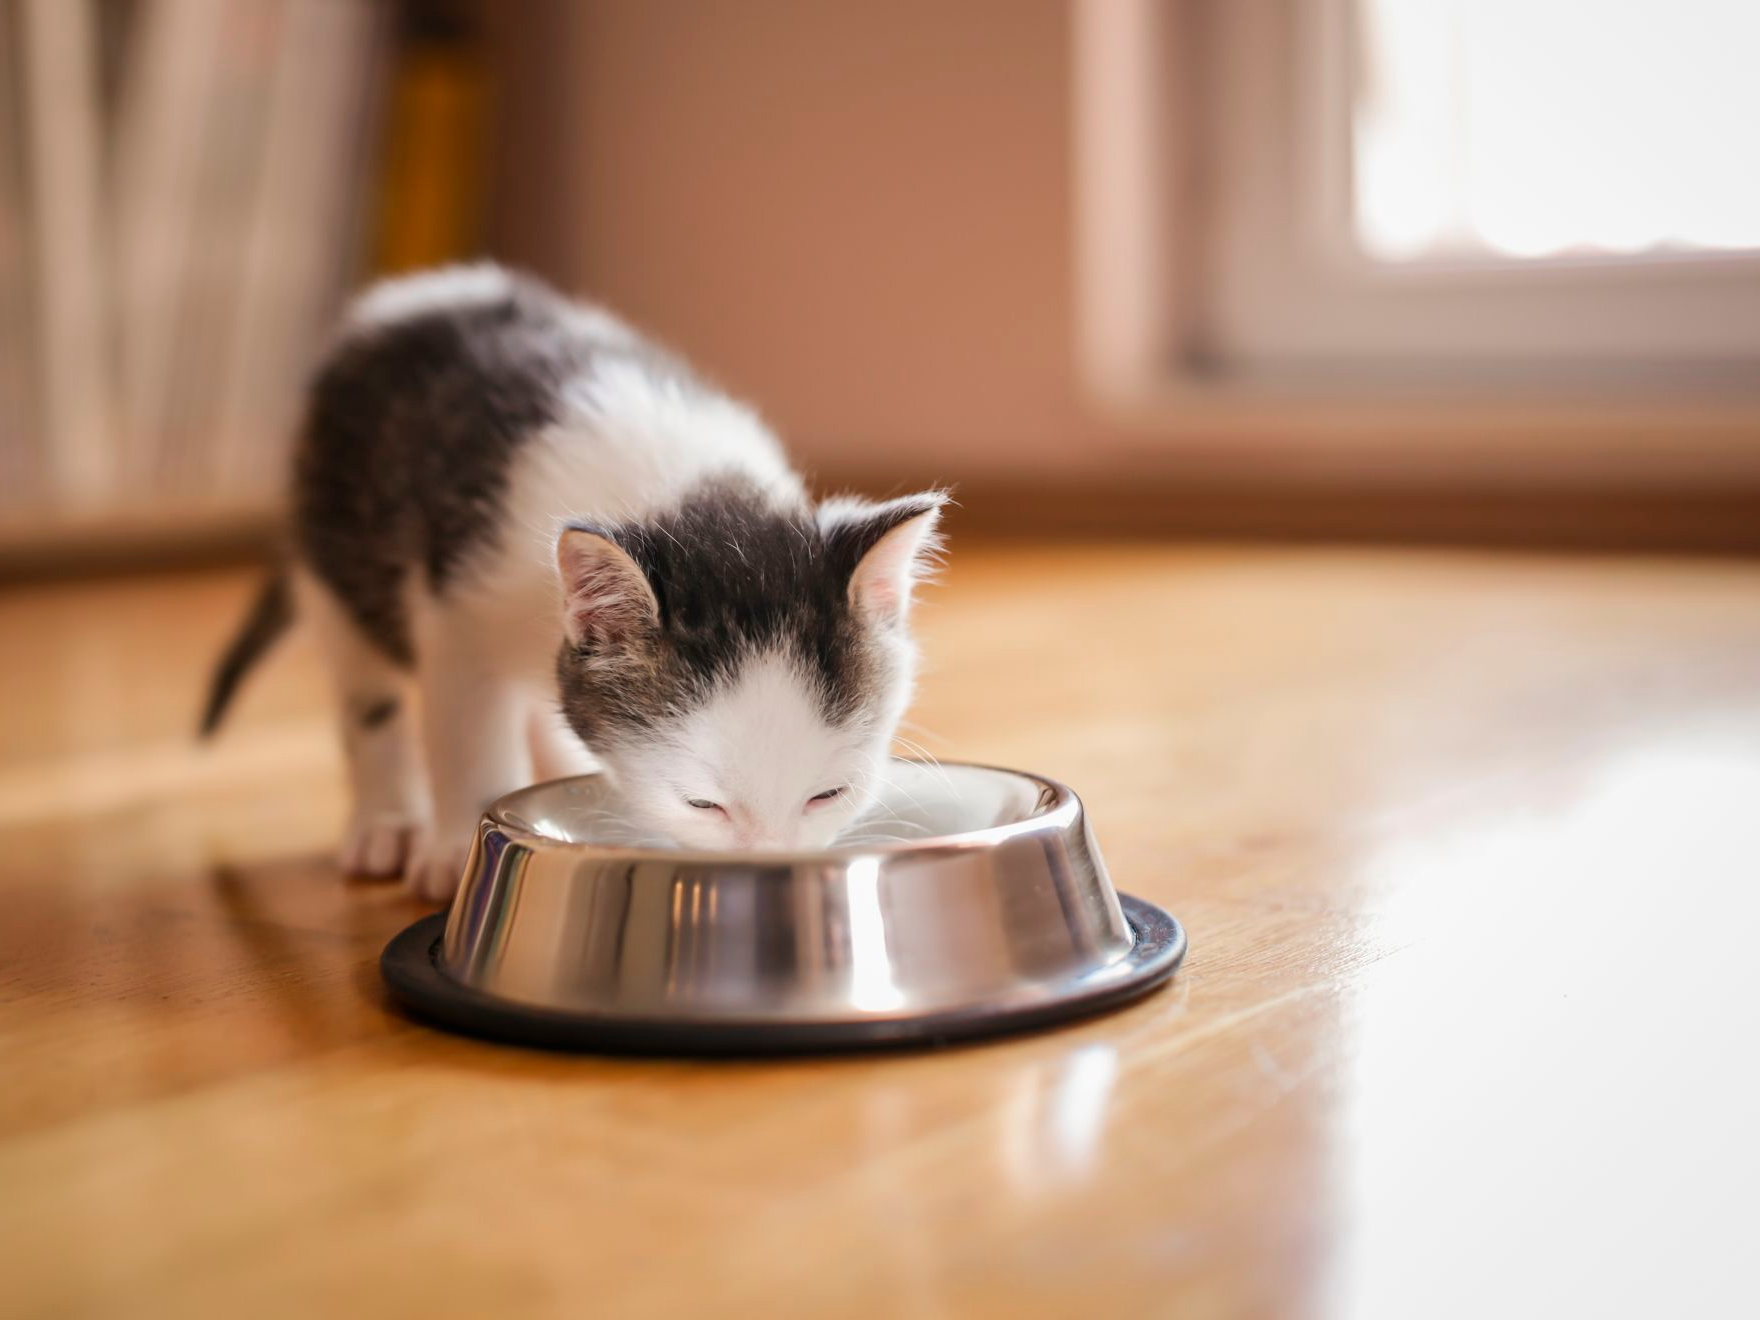 lille killing slikker mælk fra en skål, der står i stuen ved siden af et vindue